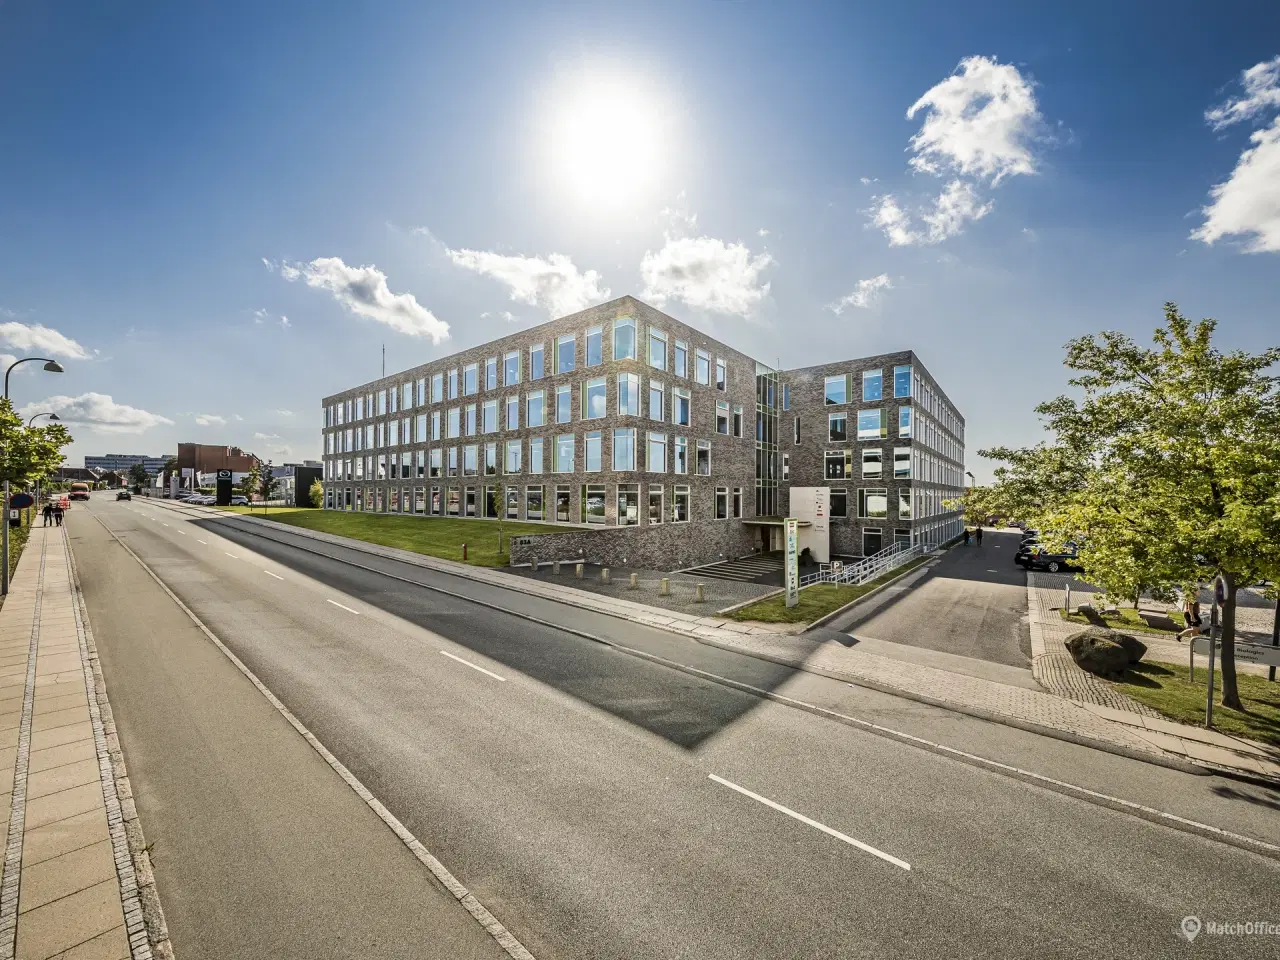 Billede 2 - Kontor i populært flerbrugerhus i Søborg